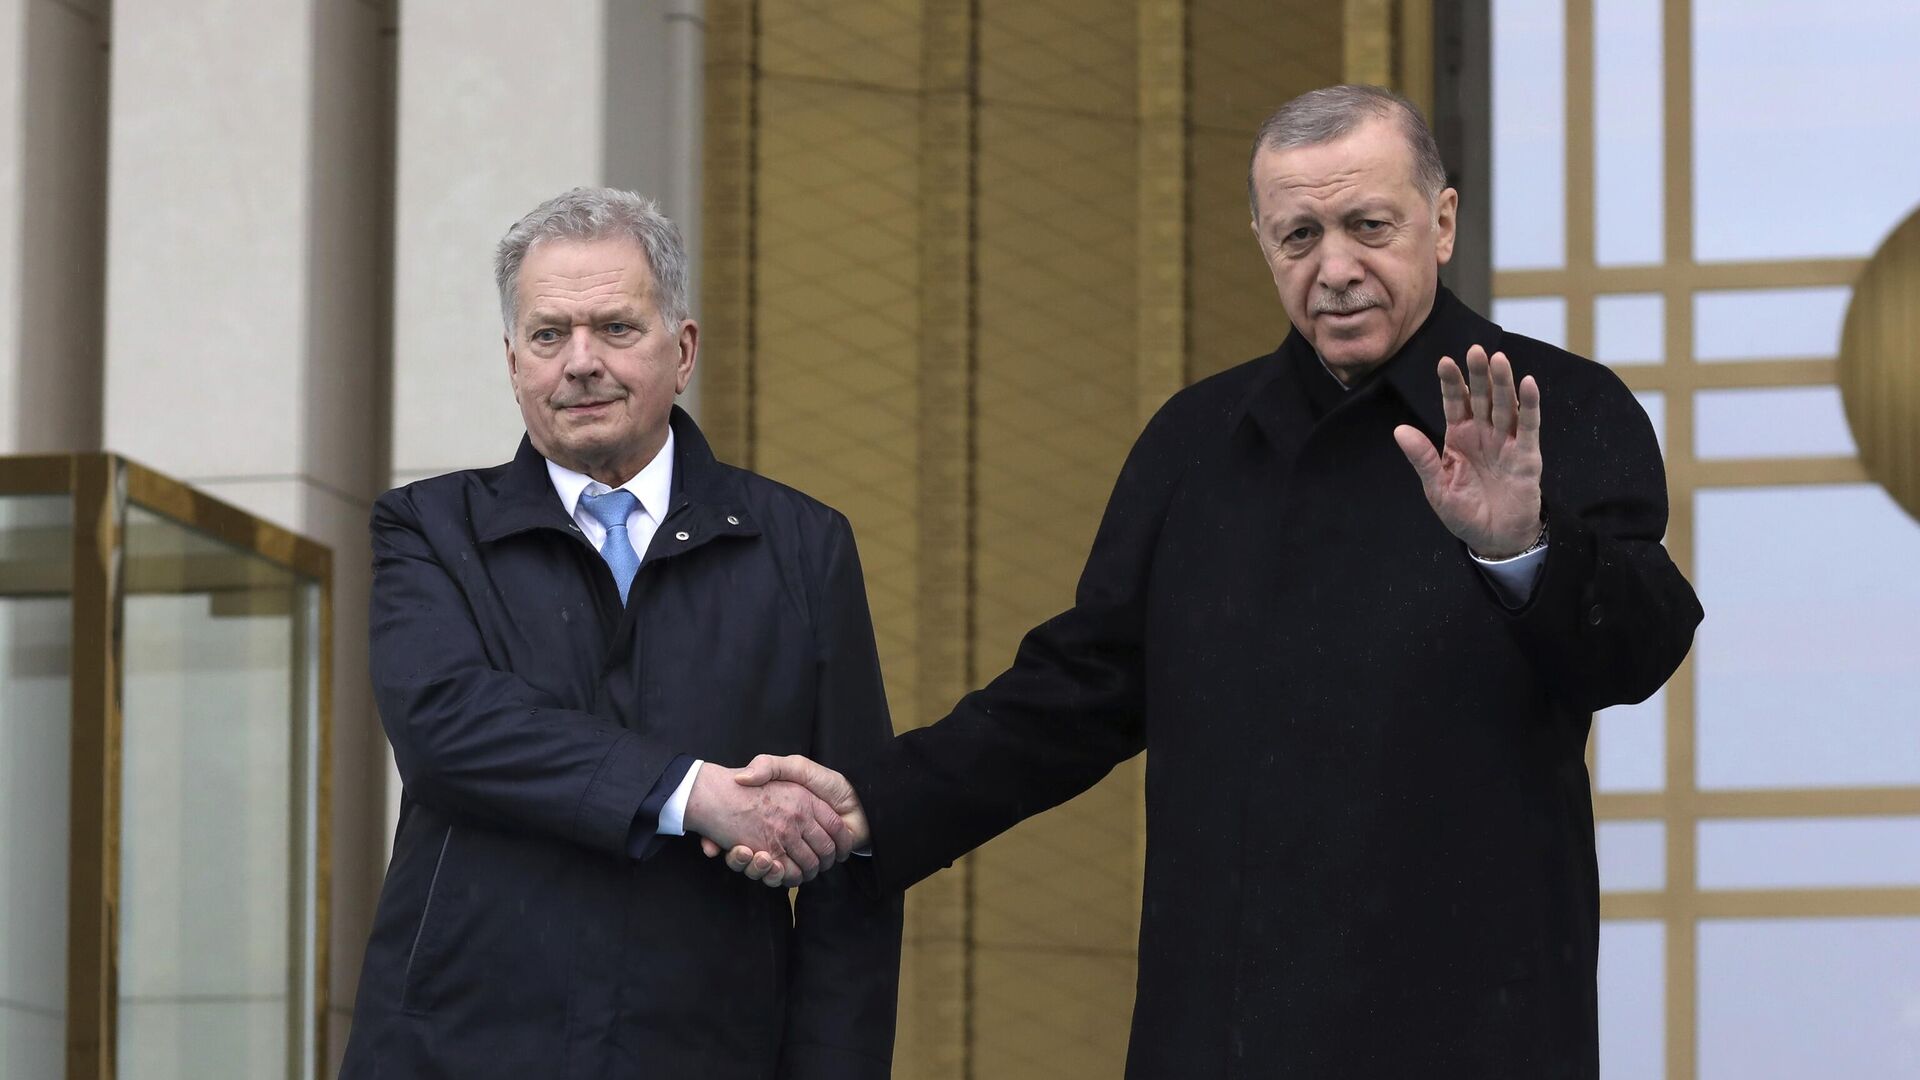 El presidente de Finlandia, Sauli Niinisto, y el mandatario turco, Recep Tayyip Erdogan, se dan la mano durante una ceremonia de bienvenida en el palacio presidencial de Ankara, Turquía, el 17 de marzo de 2023 - Sputnik Mundo, 1920, 17.03.2023